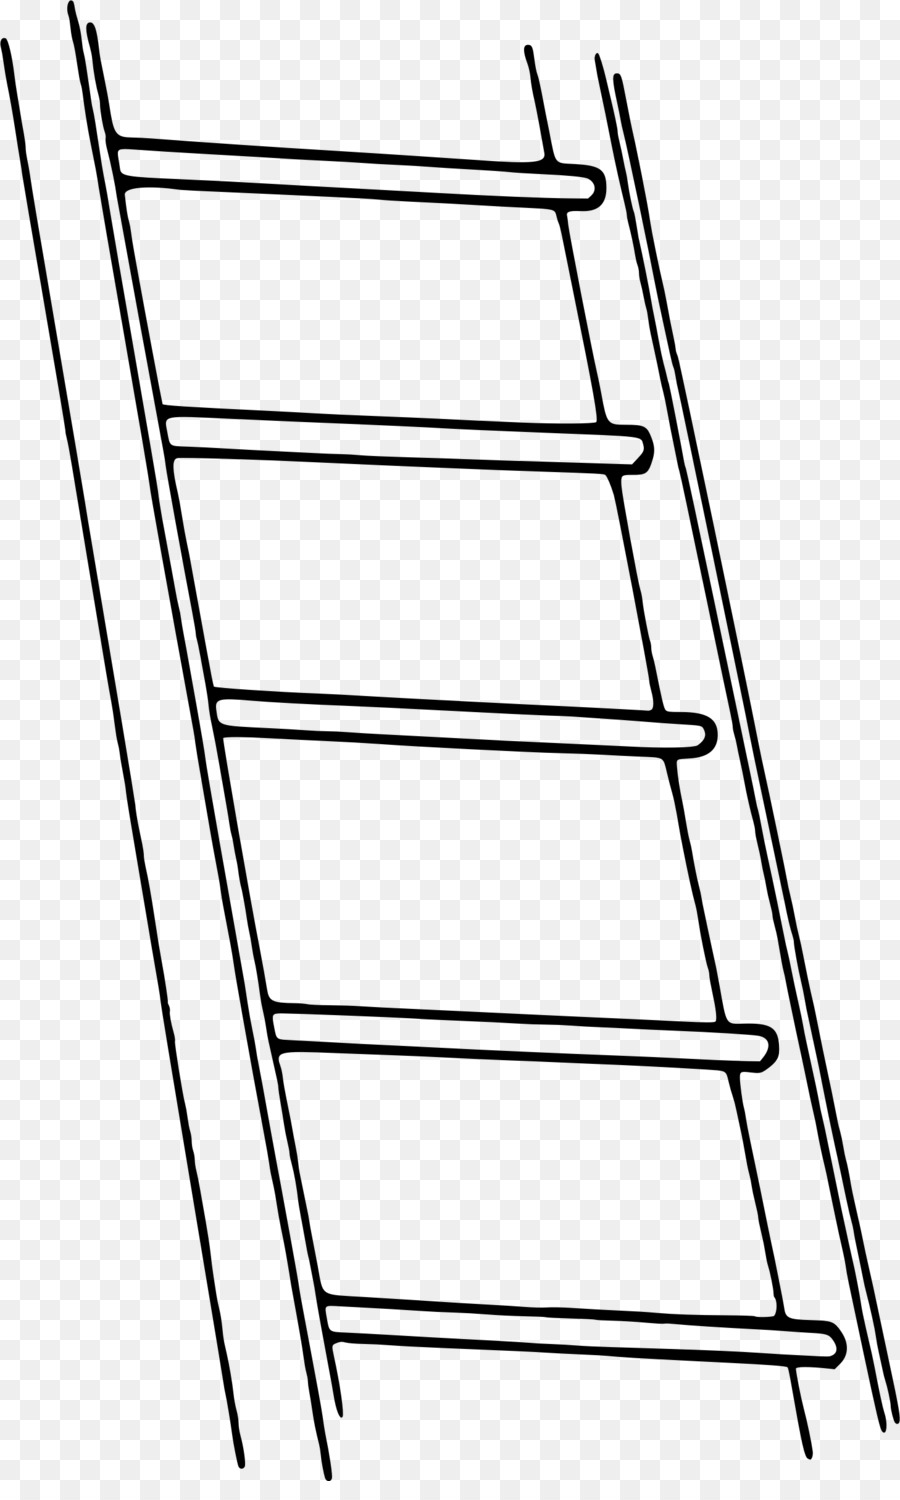 Ladder Cartoon clipart